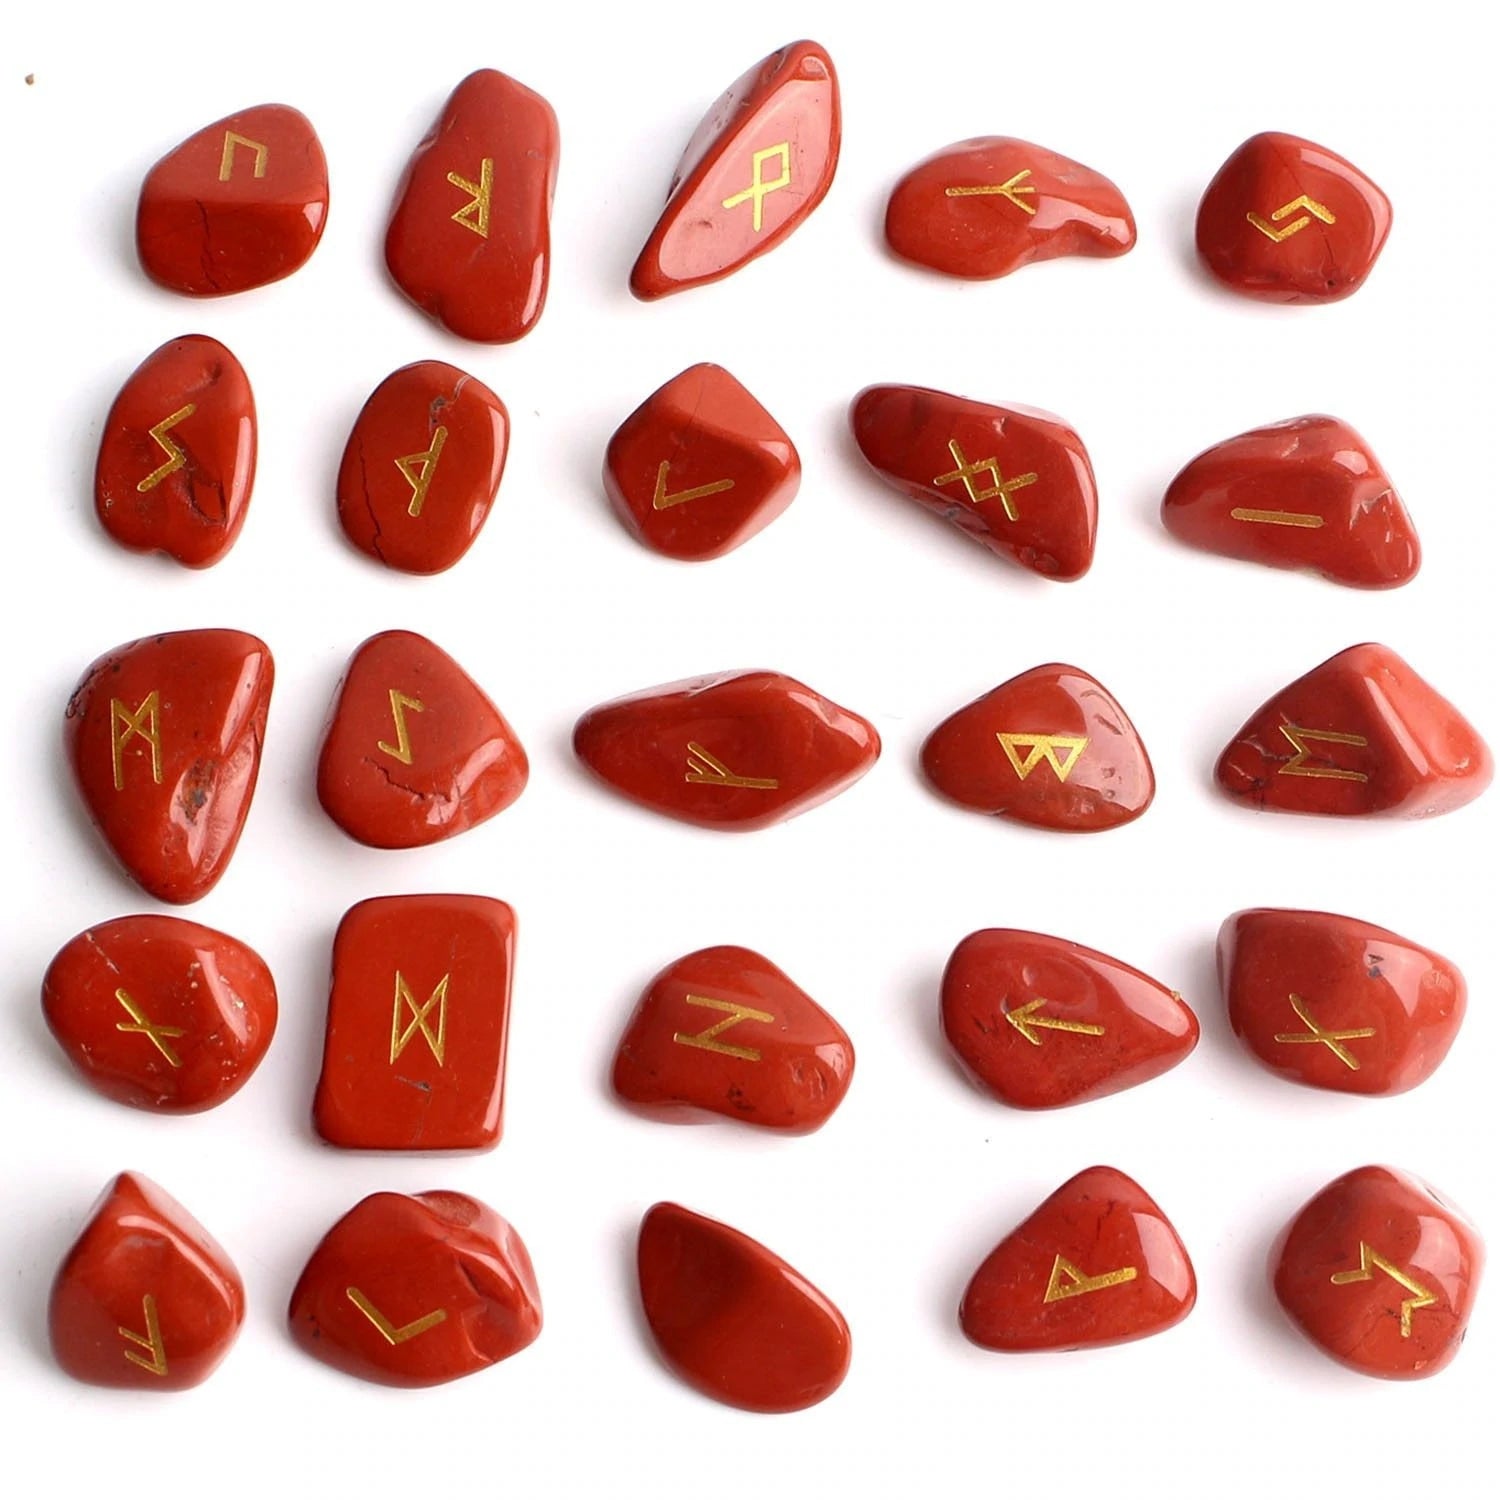 Red Jasper Rune Stones